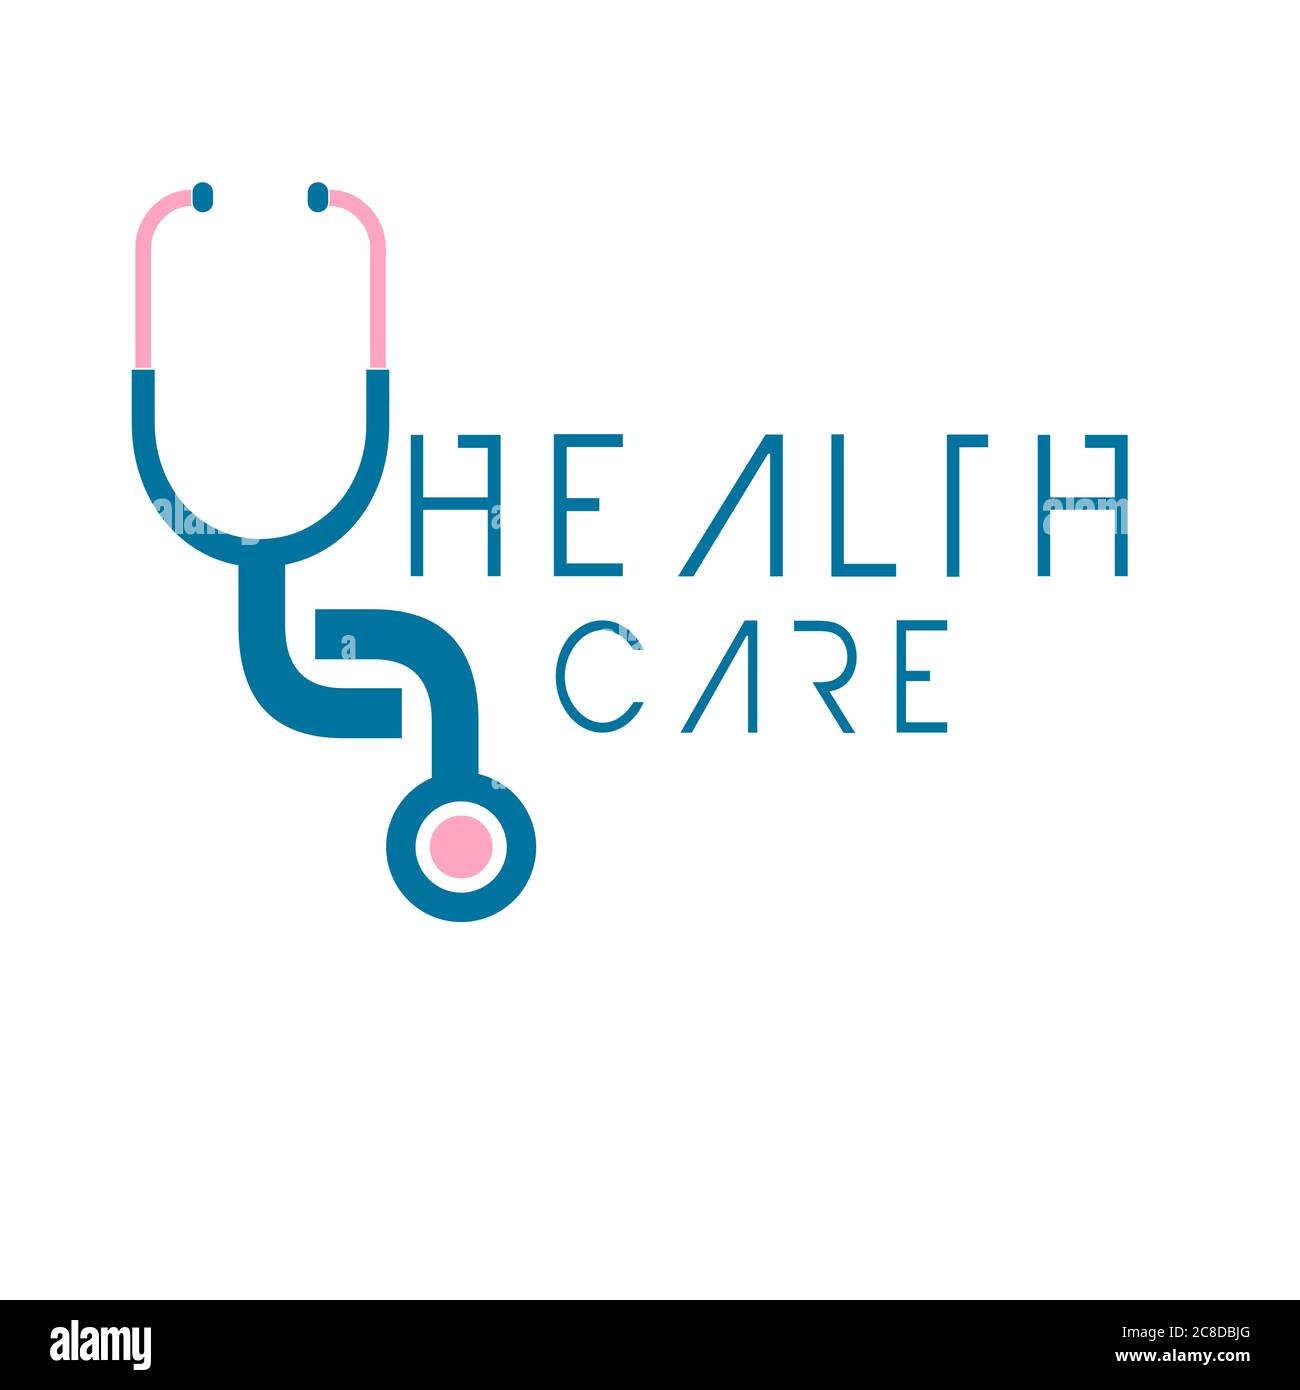 Illustrazione del settore sanitario logo vettoriale design simboli medici e ospedalieri bello simboli sanitari logo e icona. Illustrazione Vettoriale